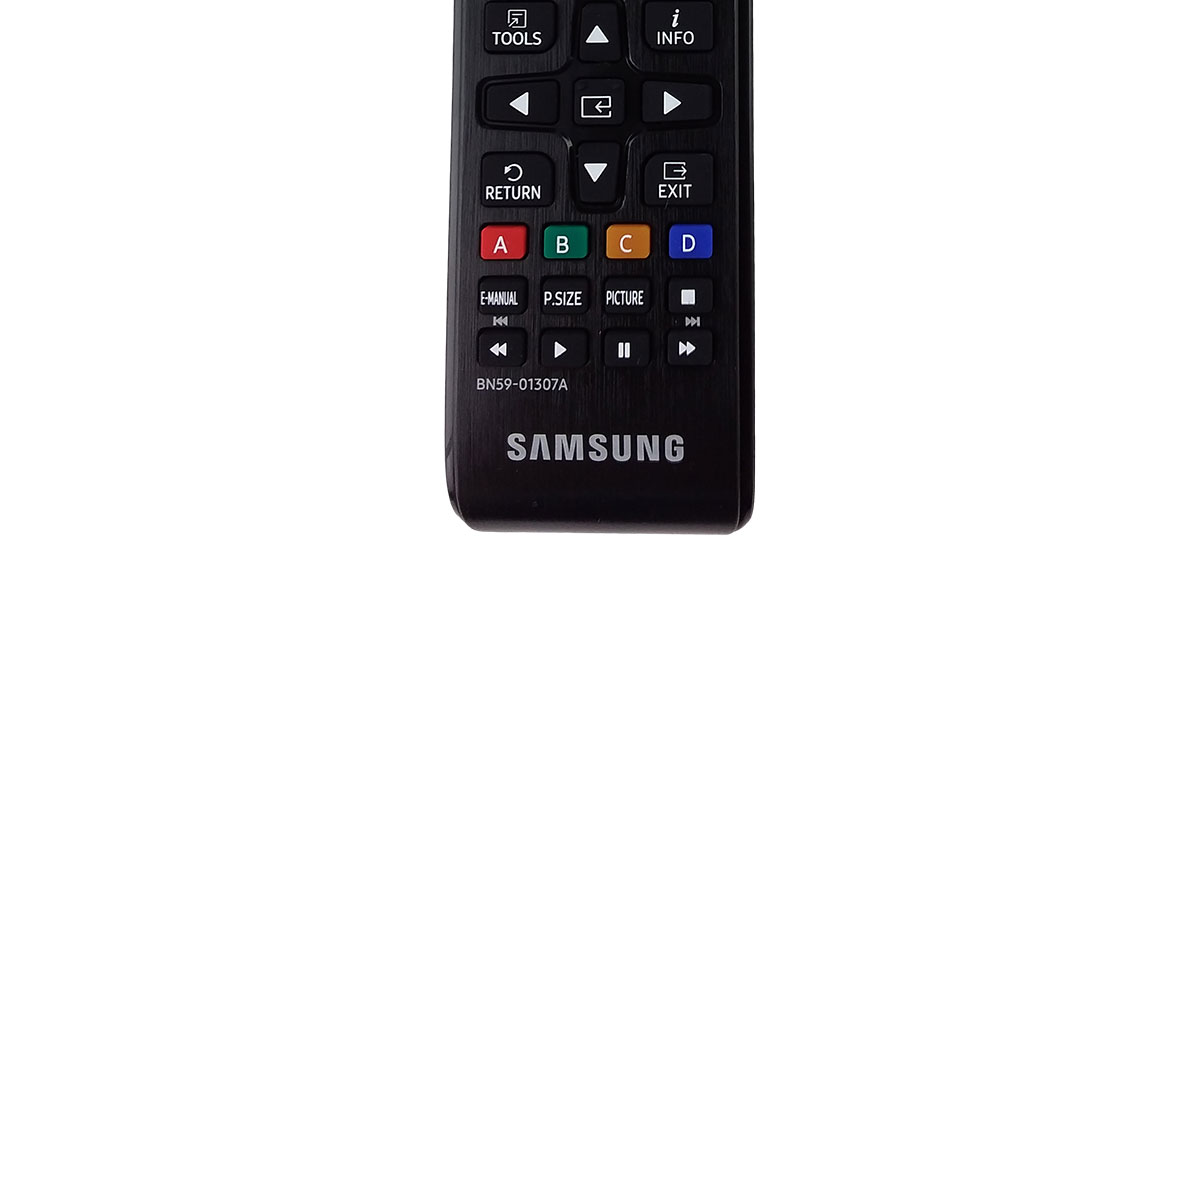 Samsung Original TV Remote Control for Samsung UN55NU6900FXZA Television